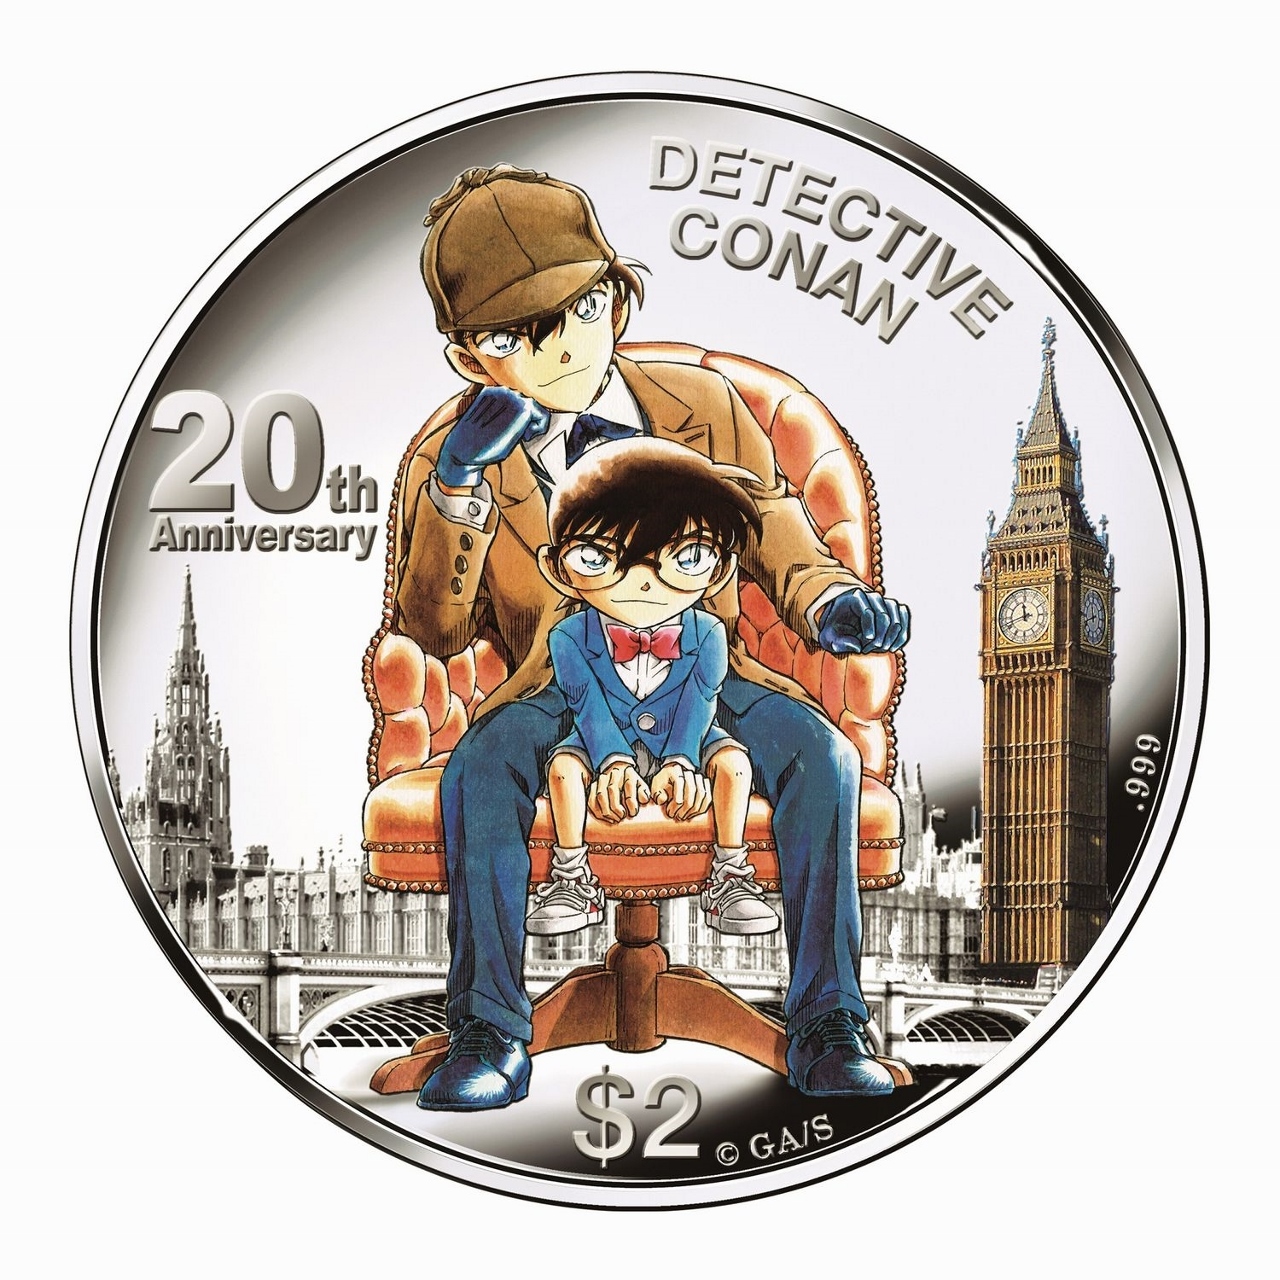 名探偵コナン20周年公式記念カラー金貨セット・銀貨セット発売 